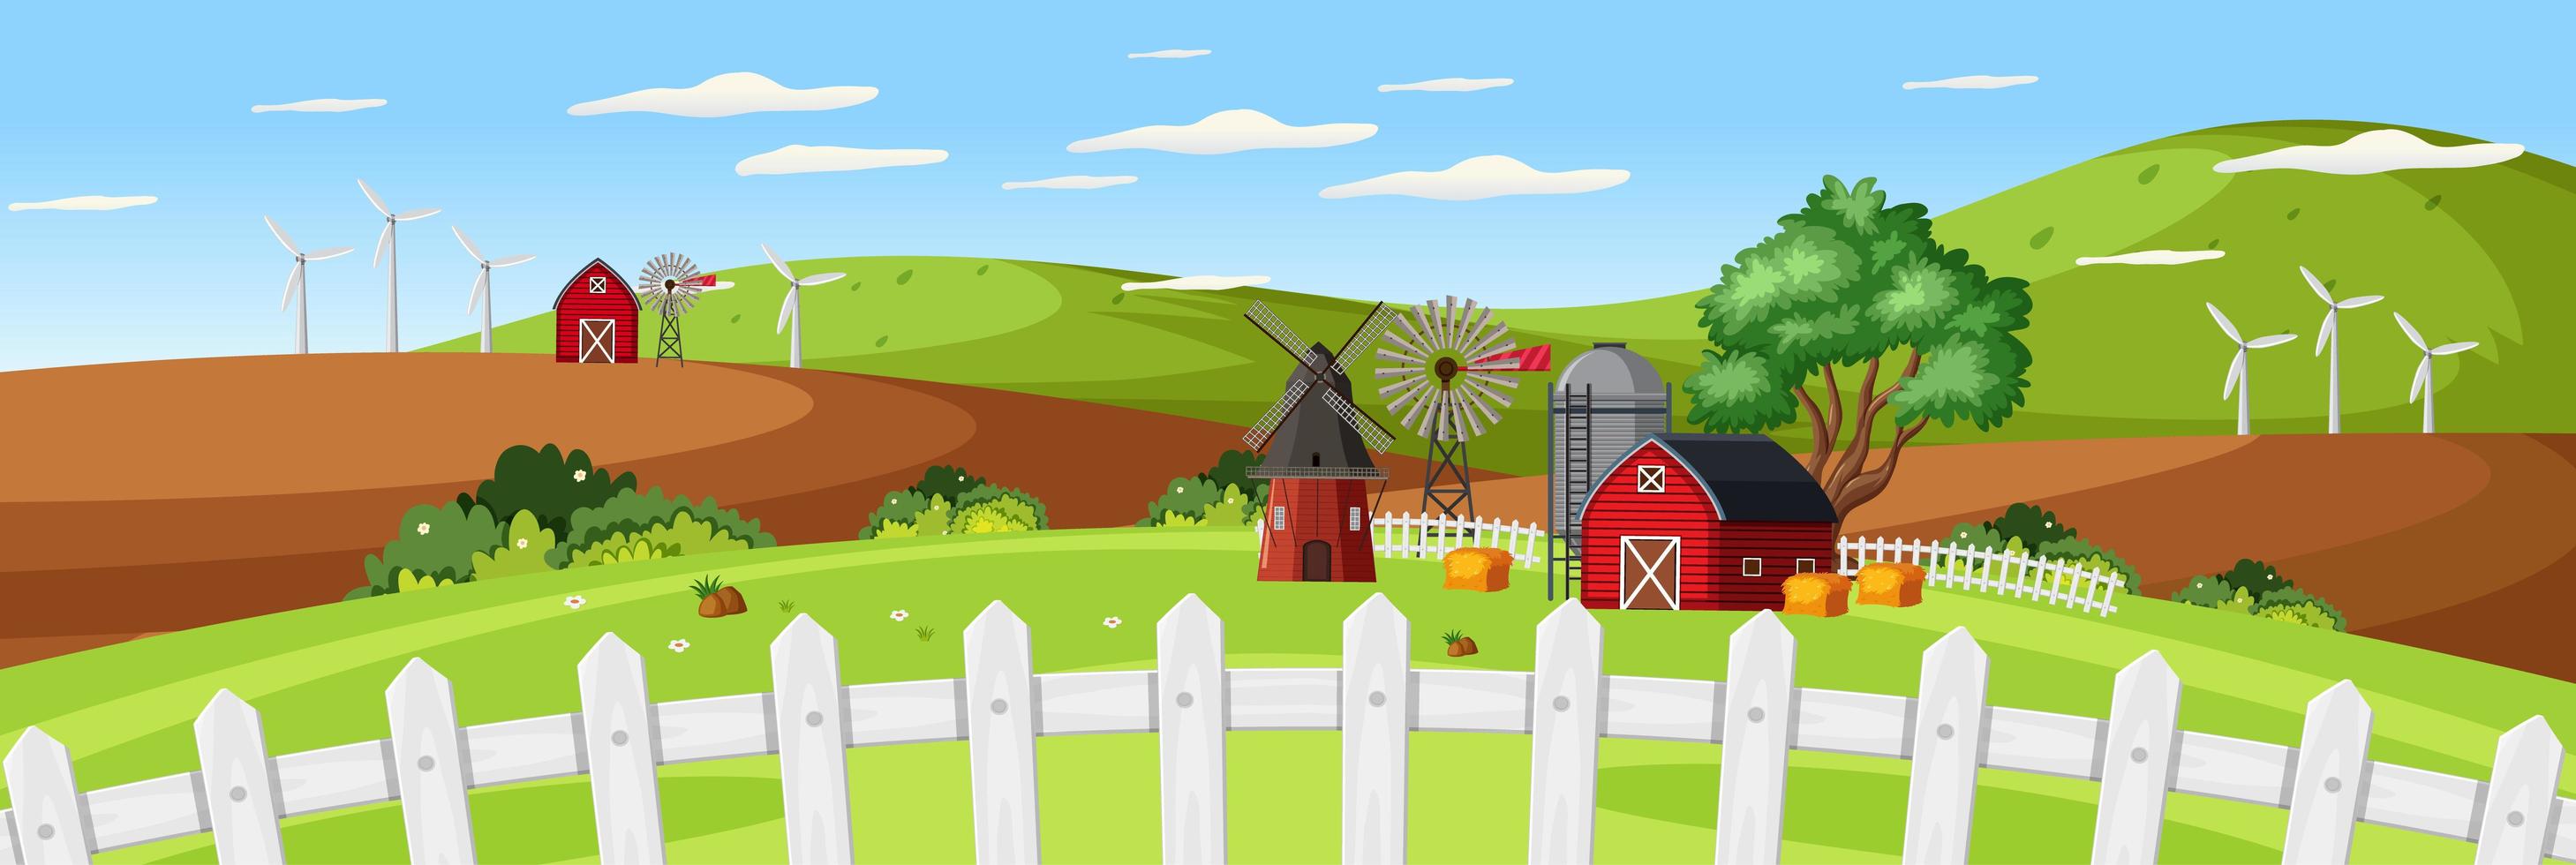 paesaggio agricolo con fienile rosso e recinzione da vicino nella stagione estiva vettore